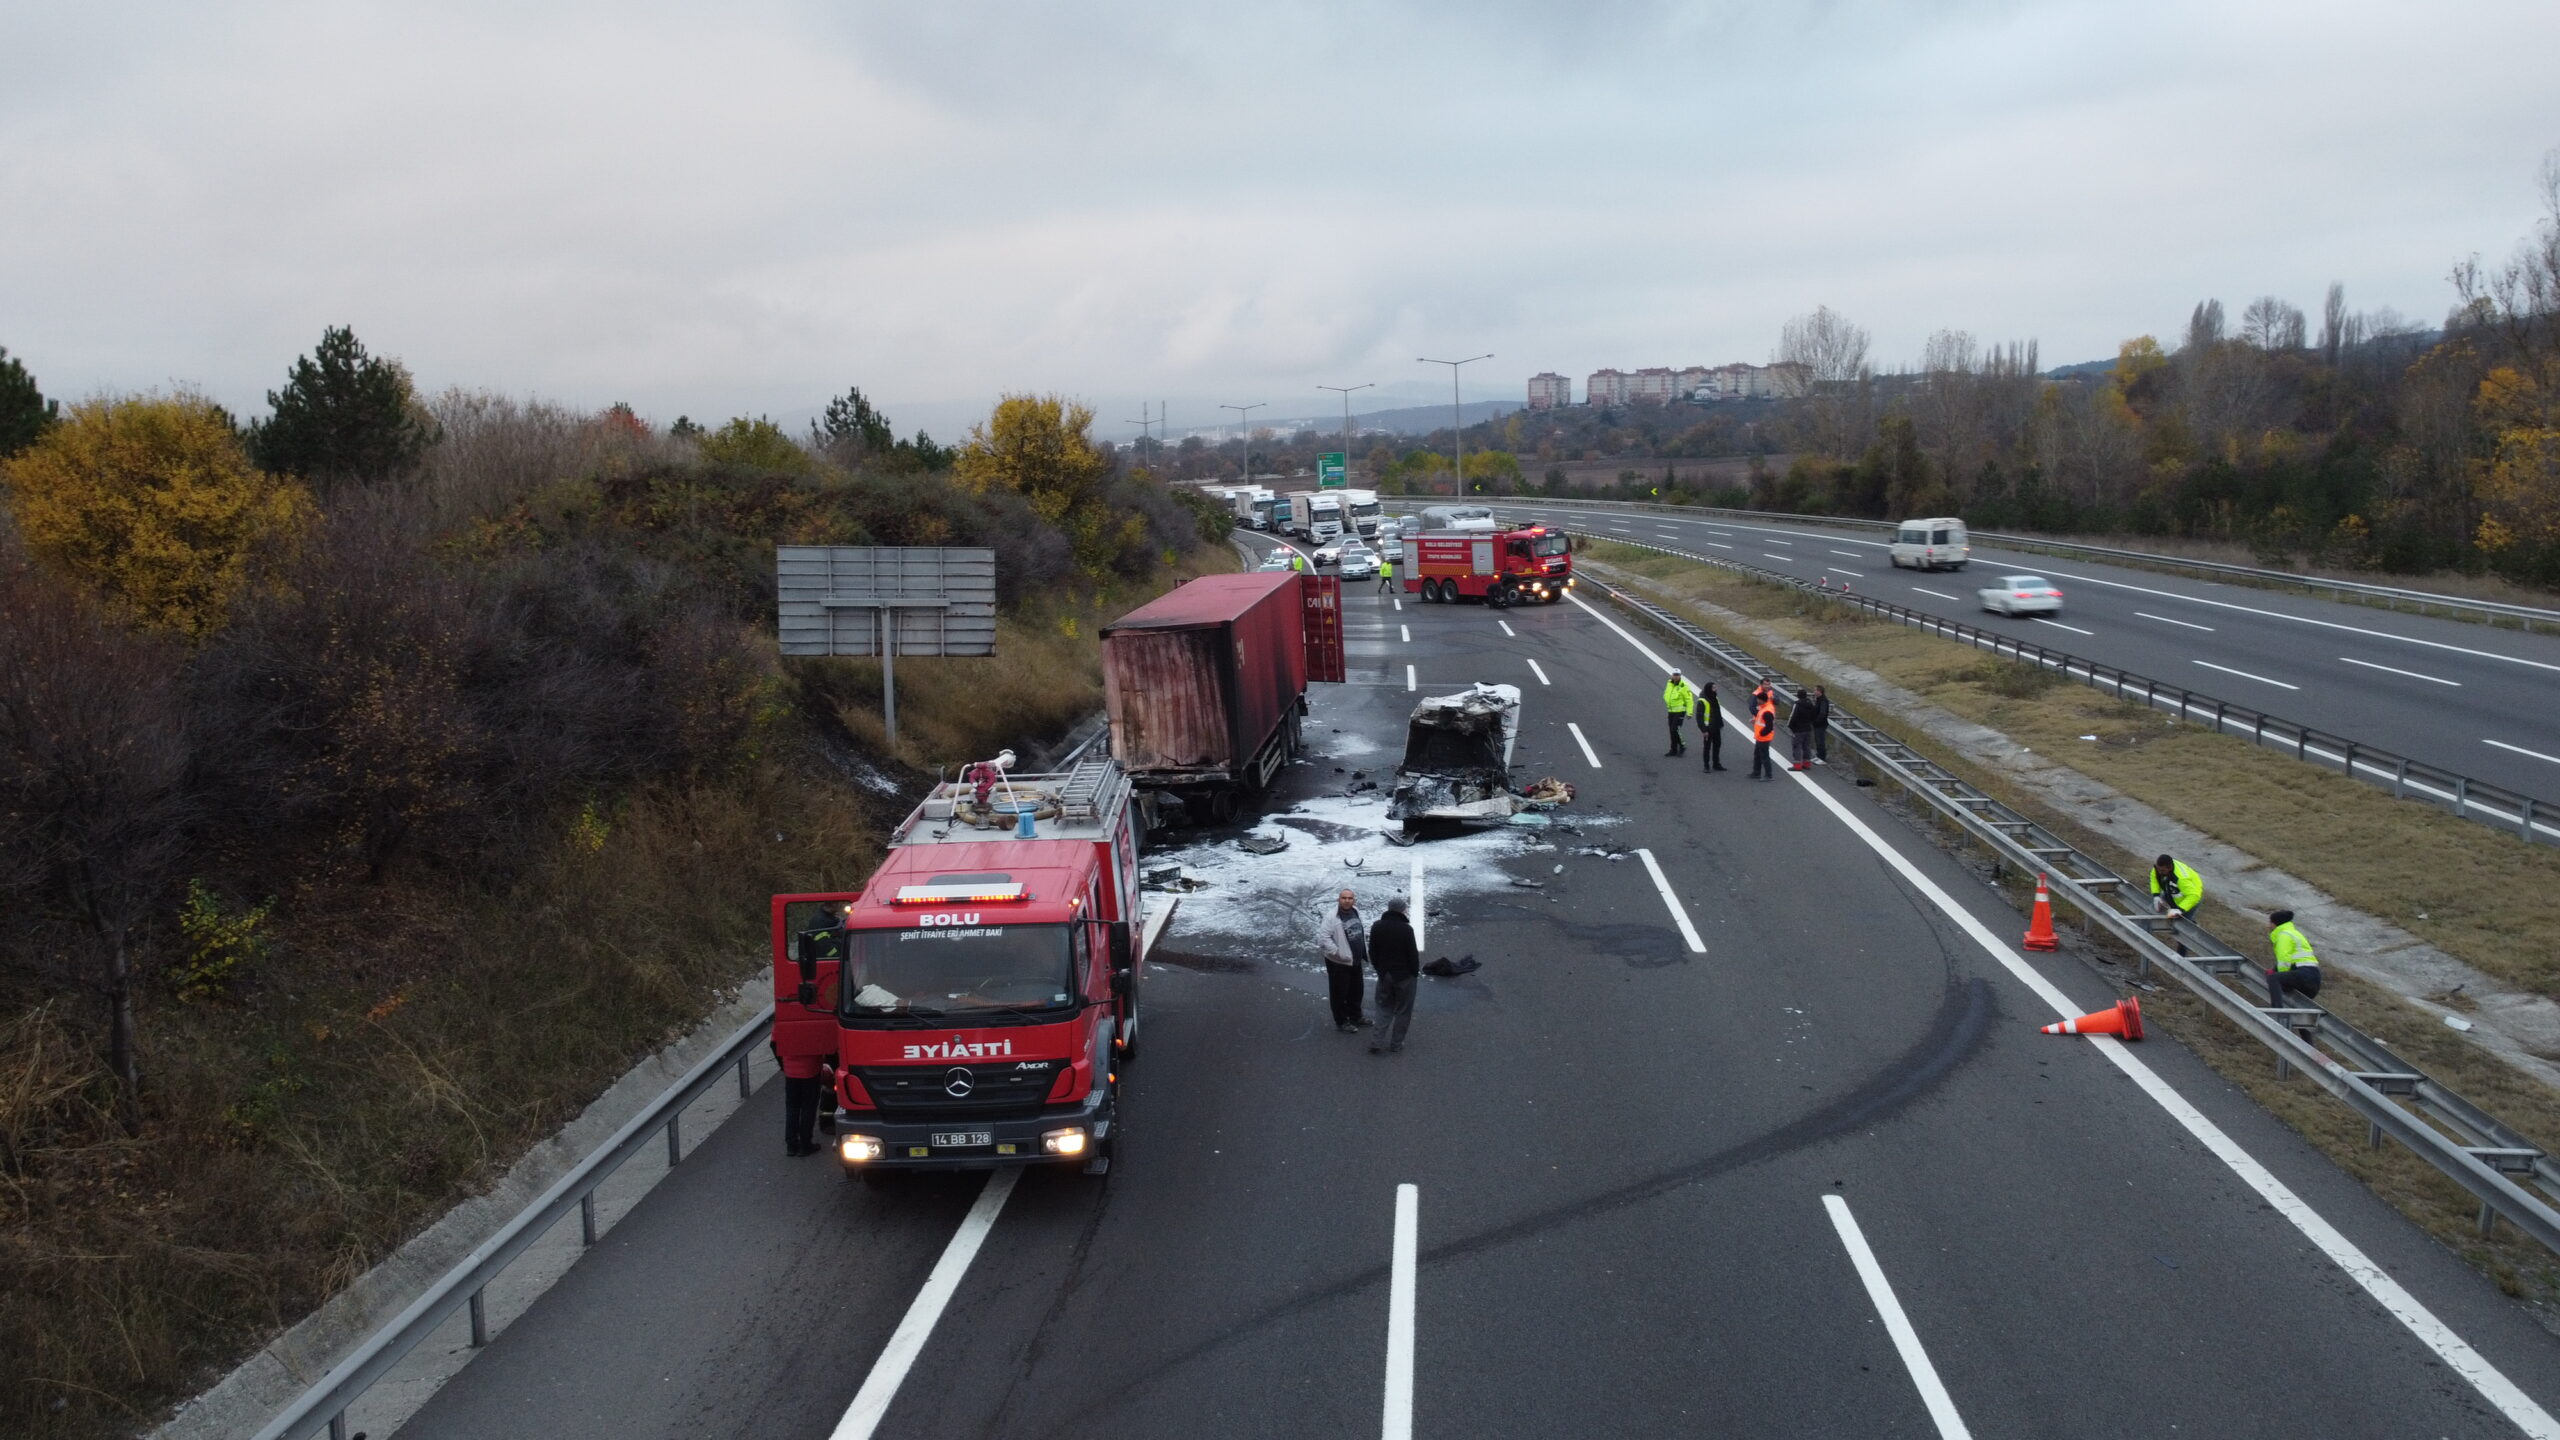 Anadolu Otoyolu’nda 2 tırın karıştığı kaza ulaşımı aksattı